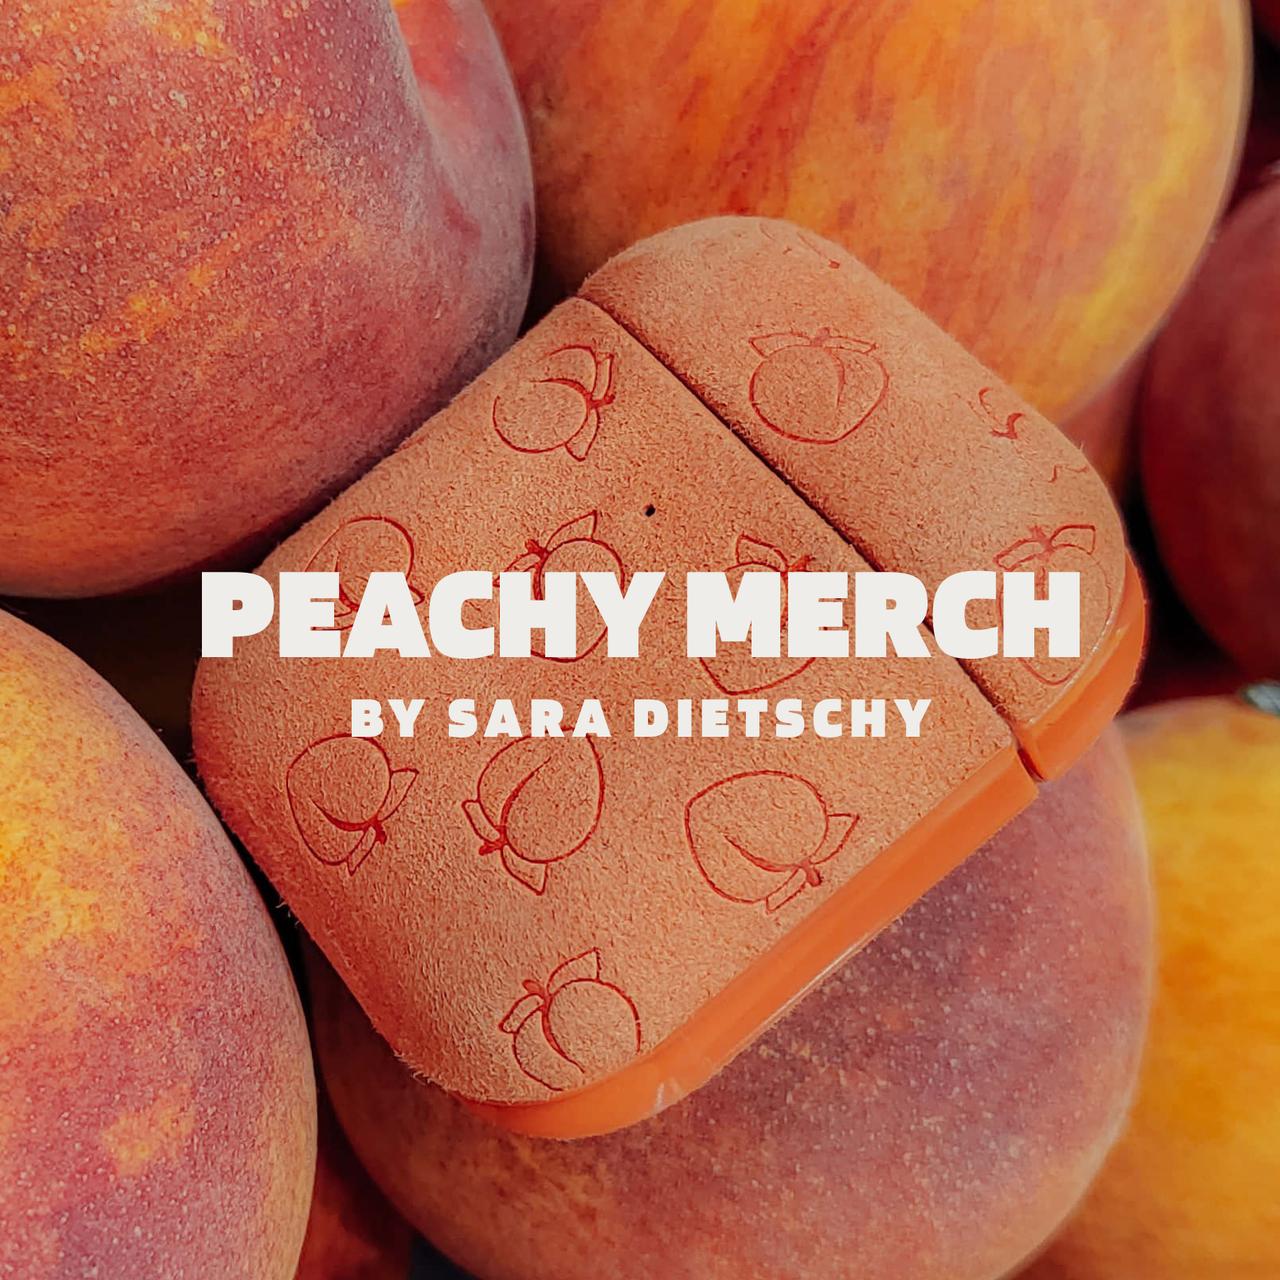 Peachy Merch by Sara Dietschy